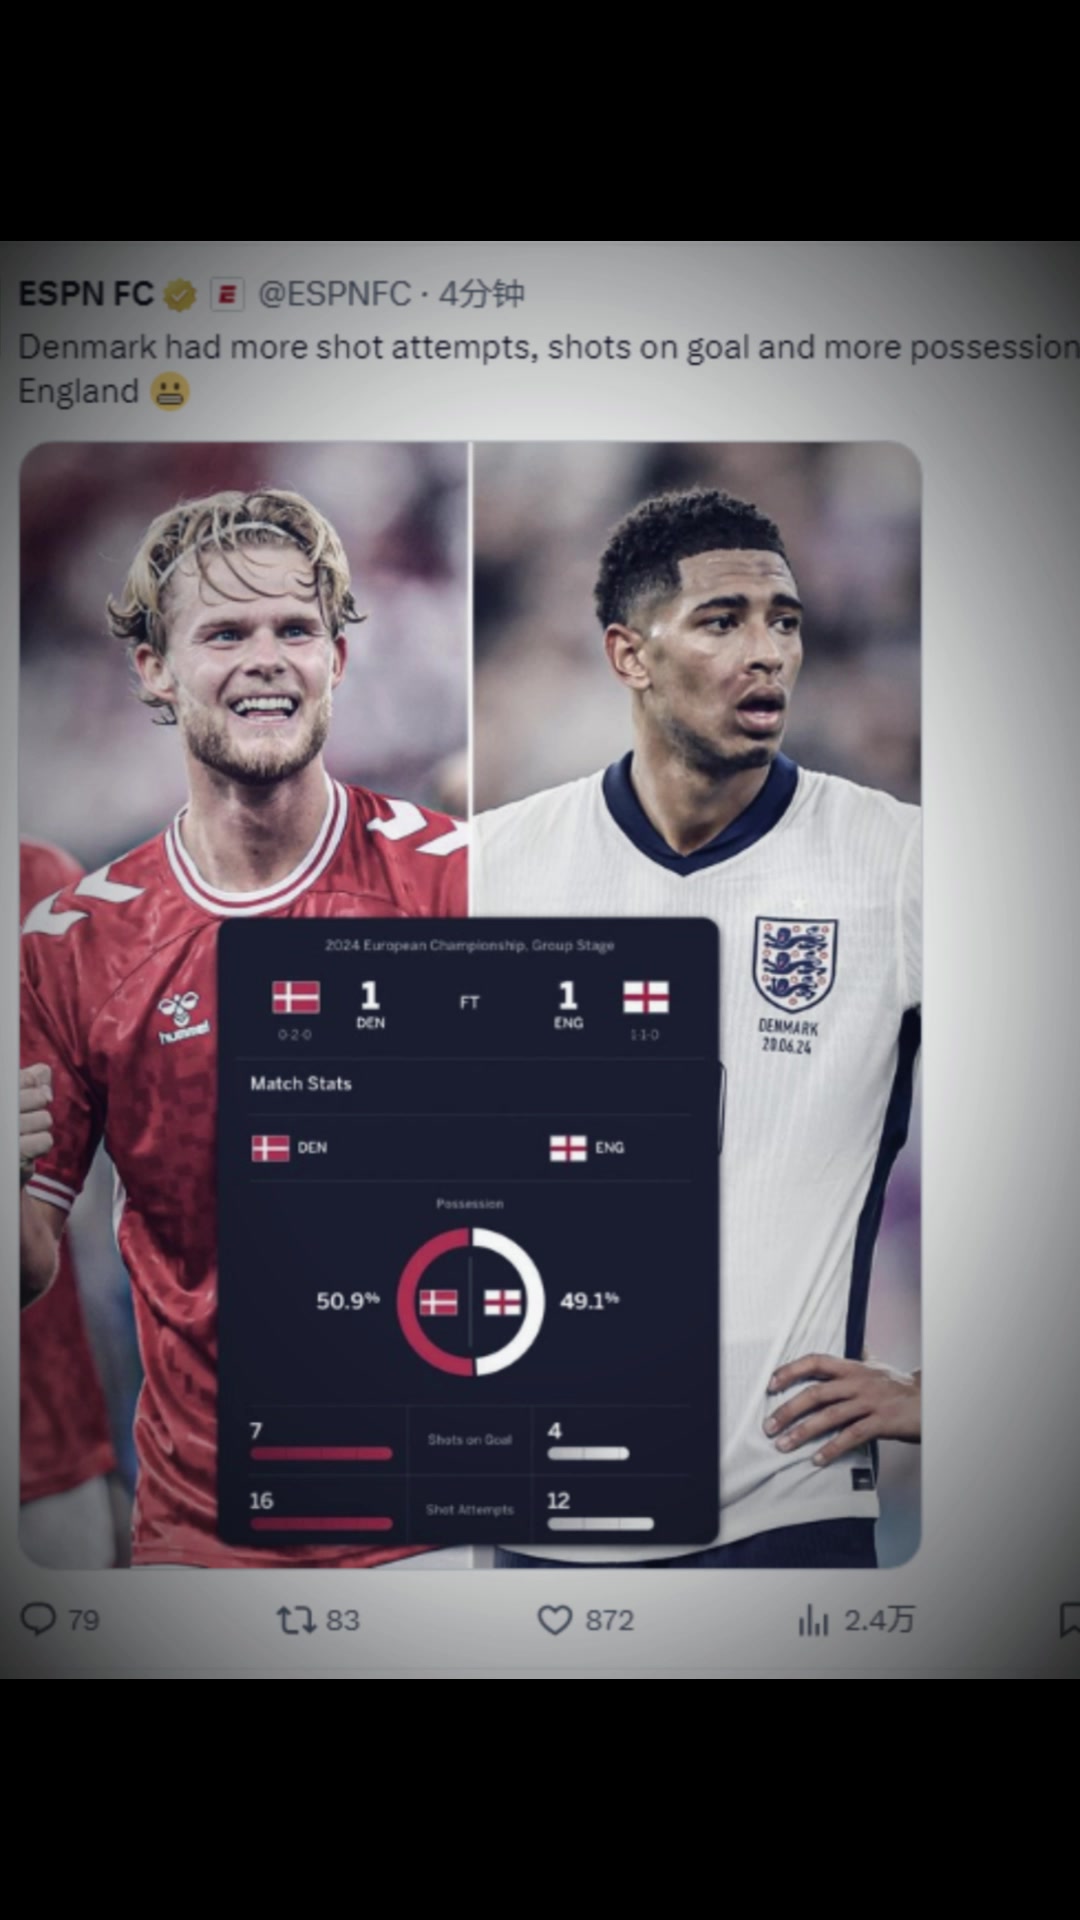 意不意外丹麦控球率、射门和射正次数都高于英格兰